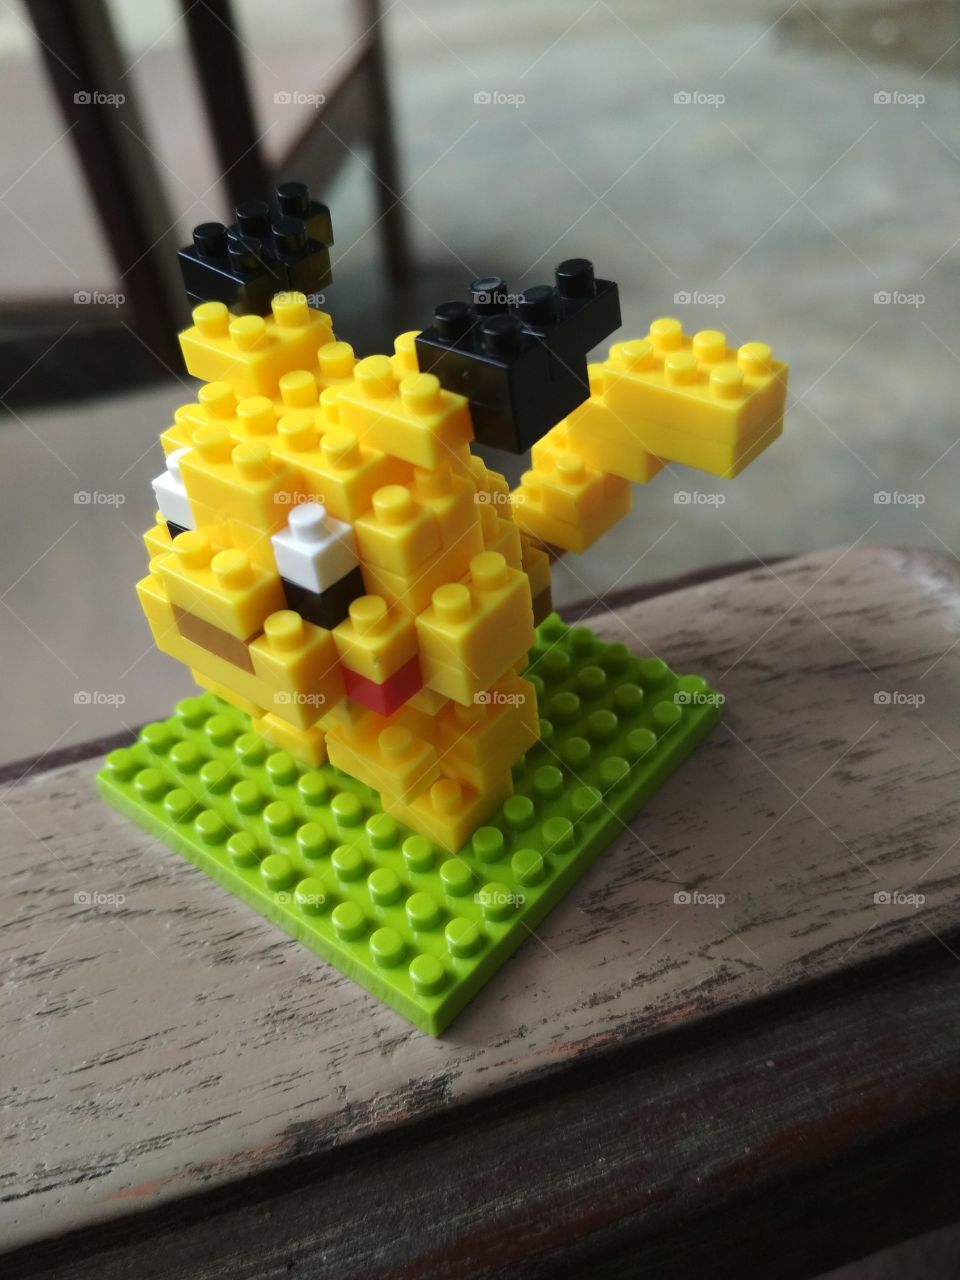 Lego